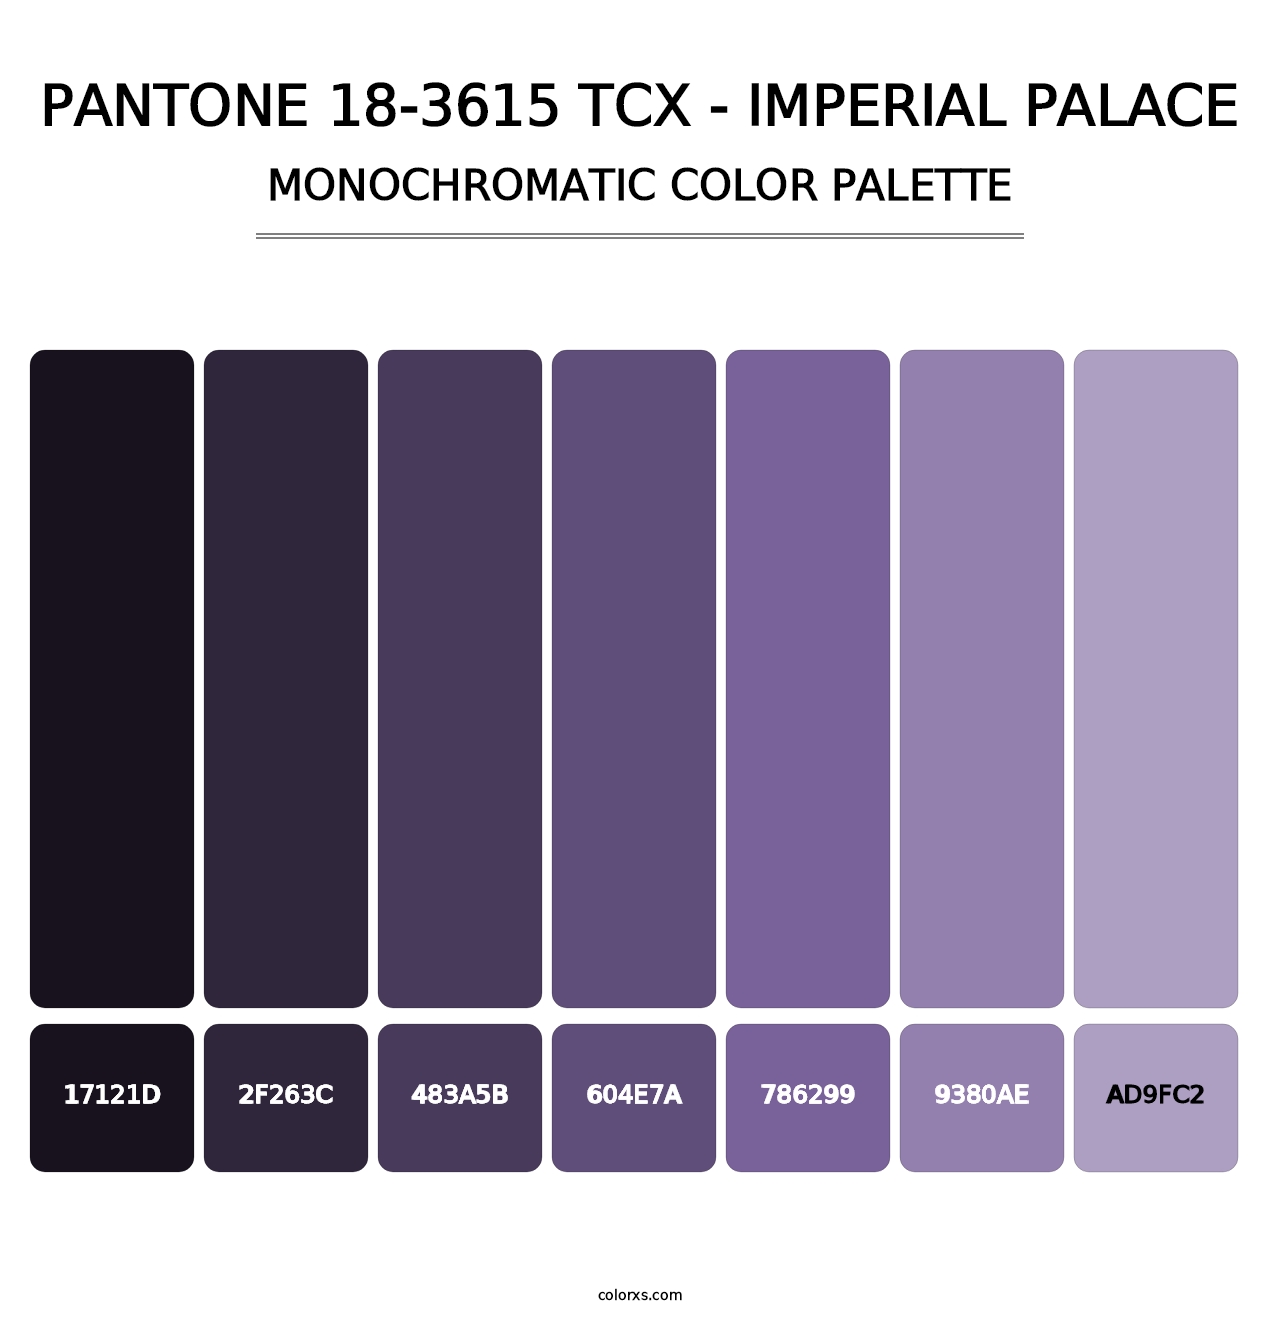 PANTONE 18-3615 TCX - Imperial Palace - Monochromatic Color Palette